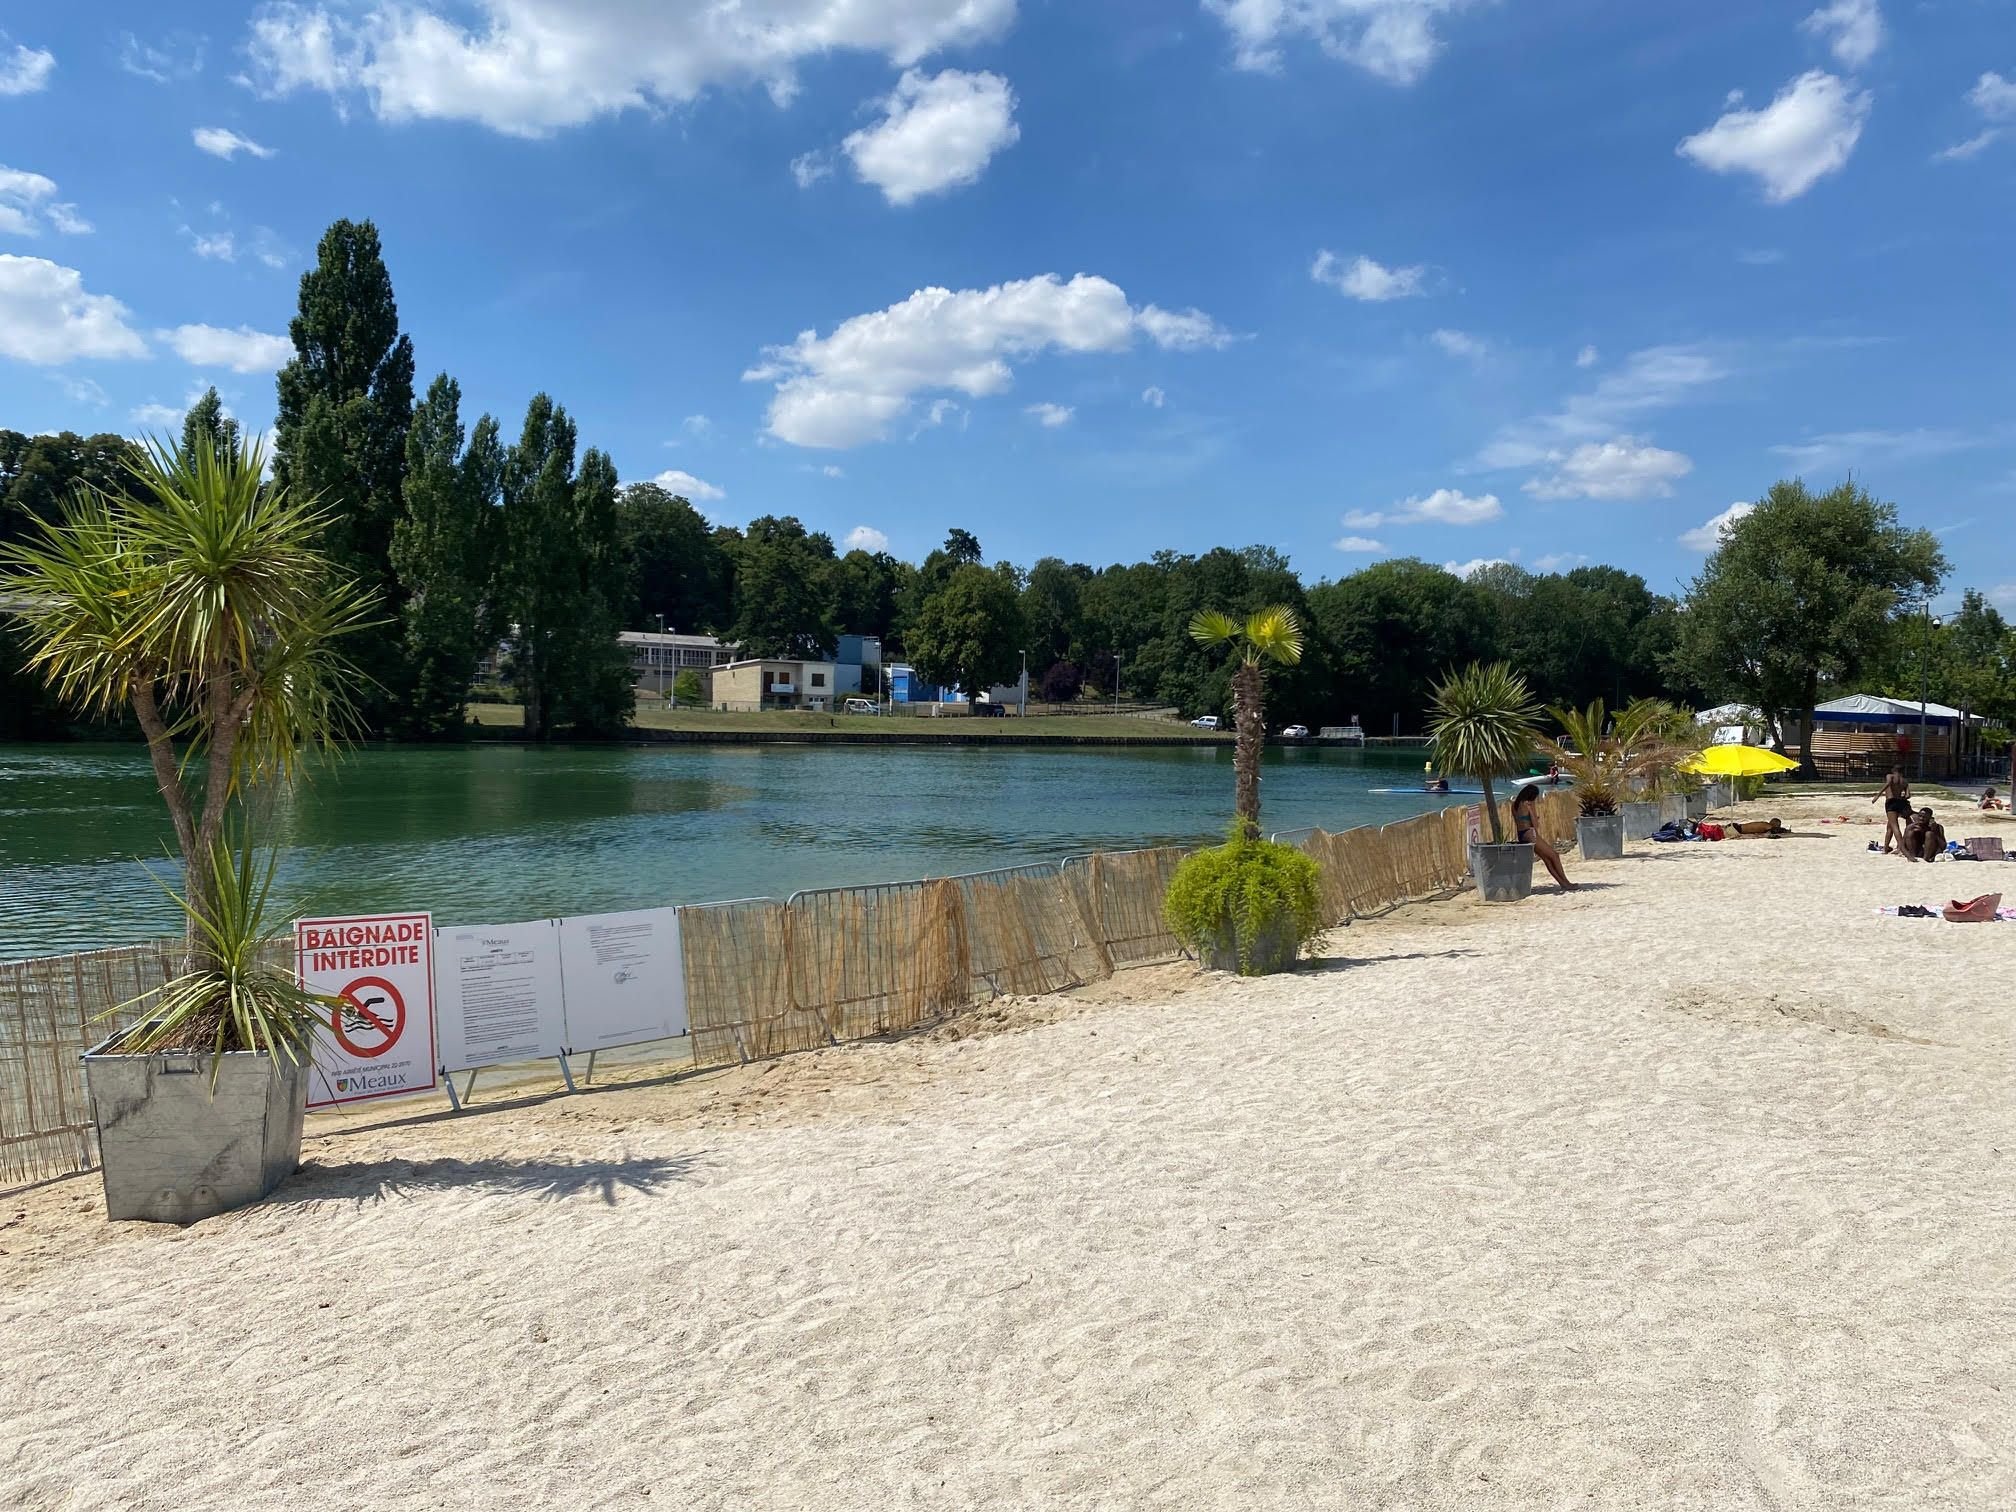 Meaux, le 30 juillet. La baignade dans la Marne a été interdite à la suite d'une qualité de l'eau jugée insuffisante pour assurer la sécurité des personnes. LP/Joffray Vasseur